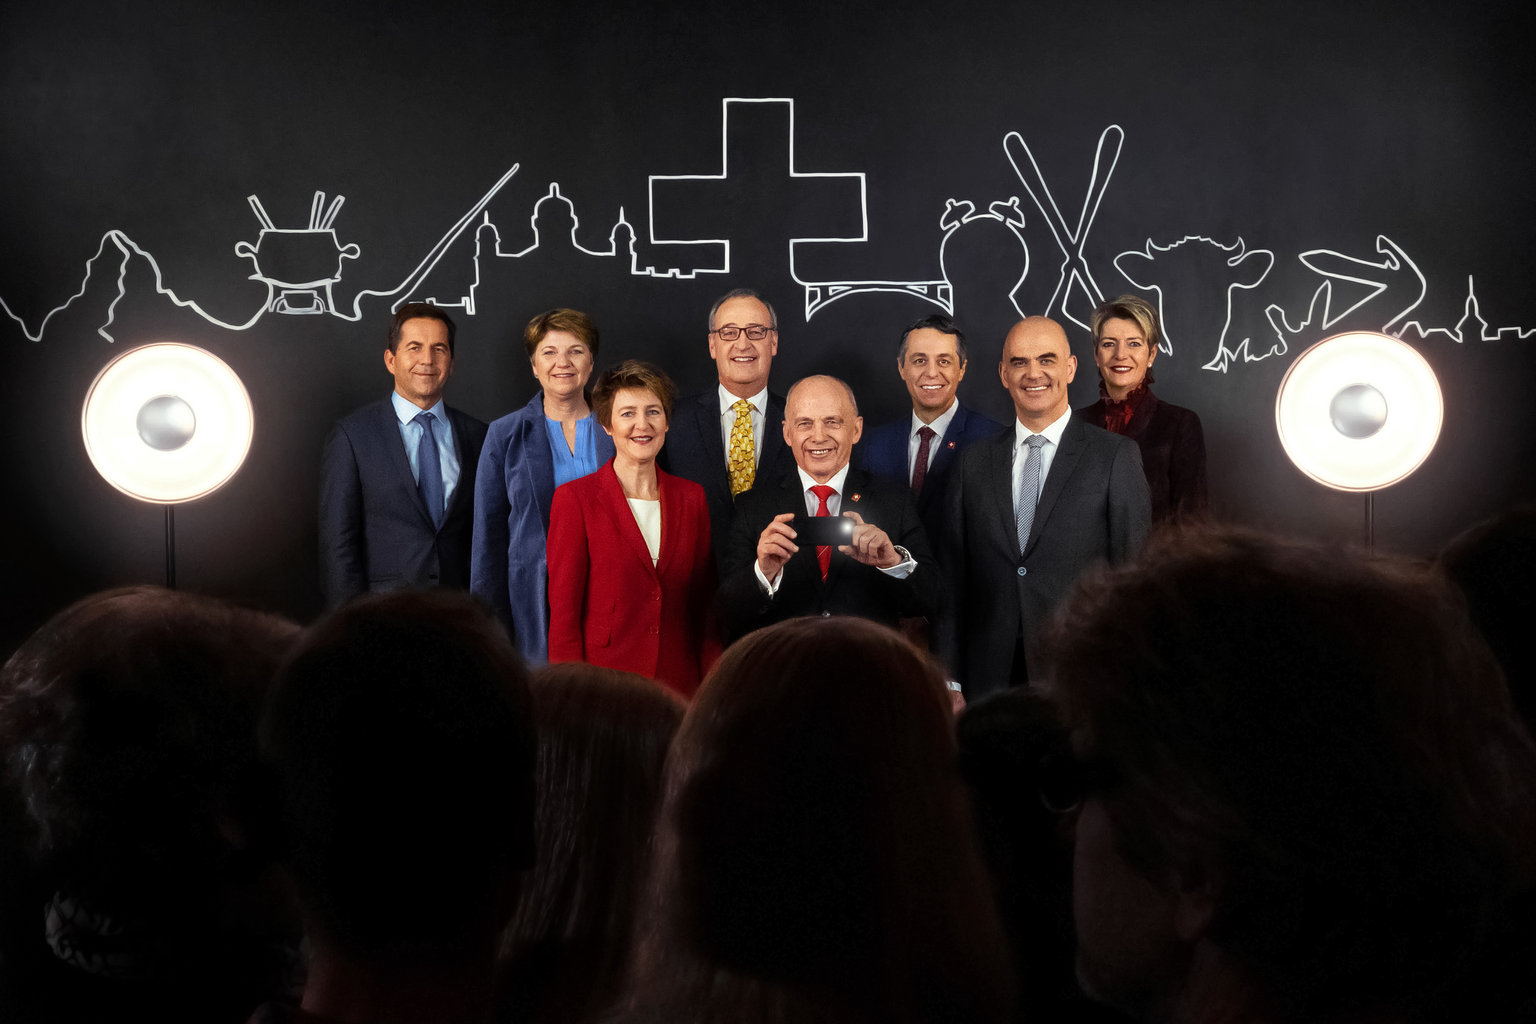 Photo of Federal Hükümet üyelerinin 2019 yılı fotoğrafı